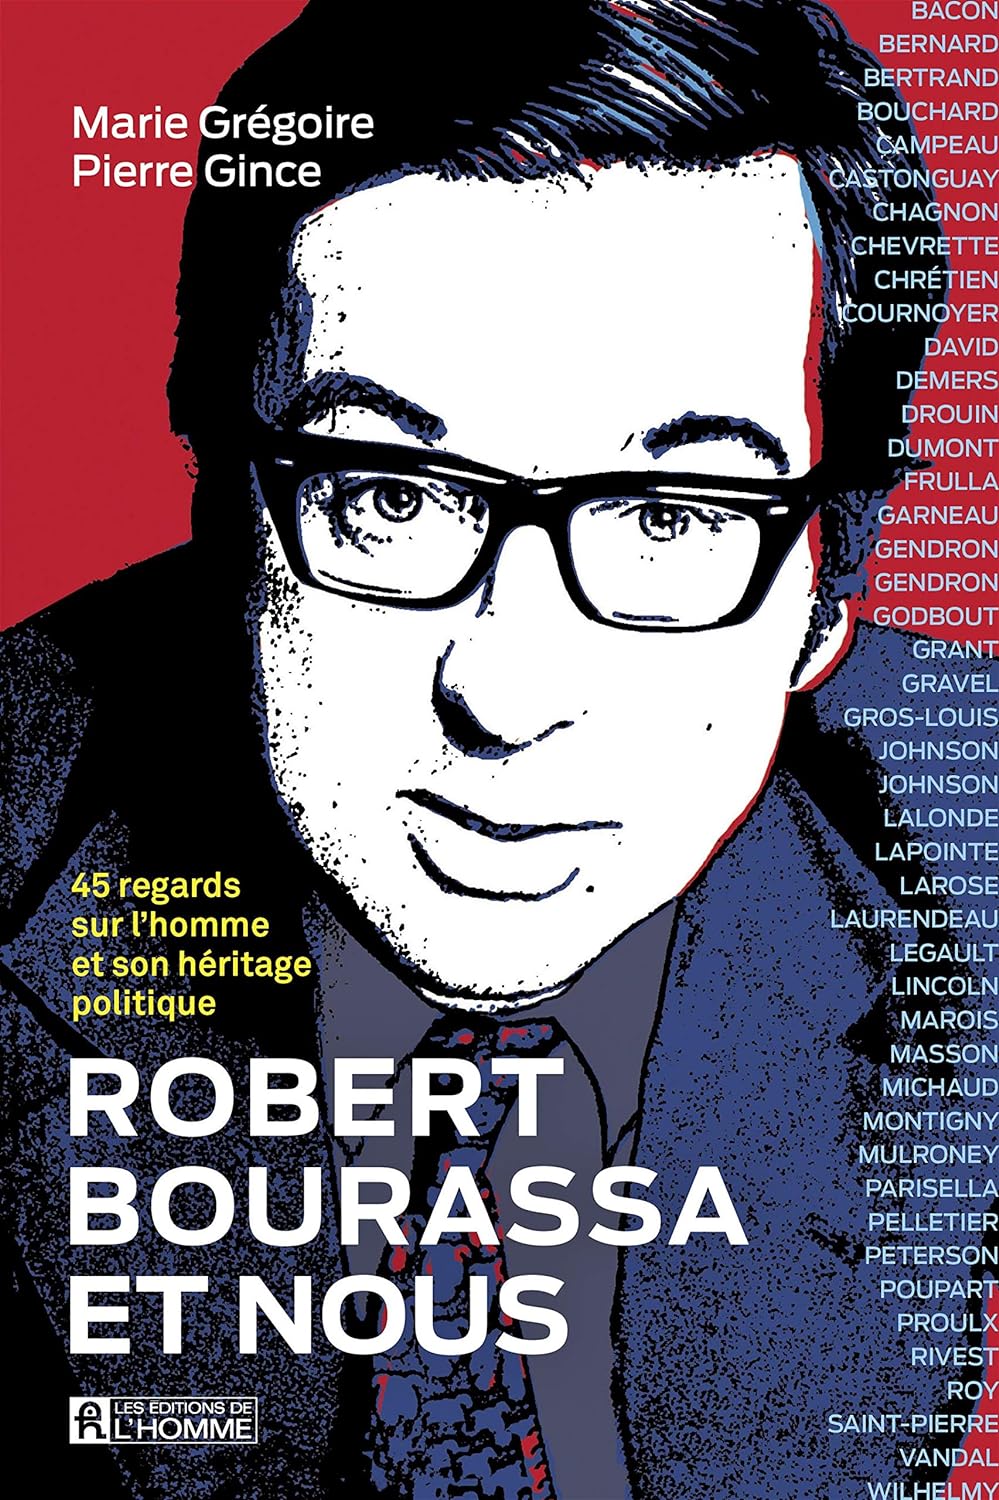 Robert Bourassa et nous - Pierre Gince